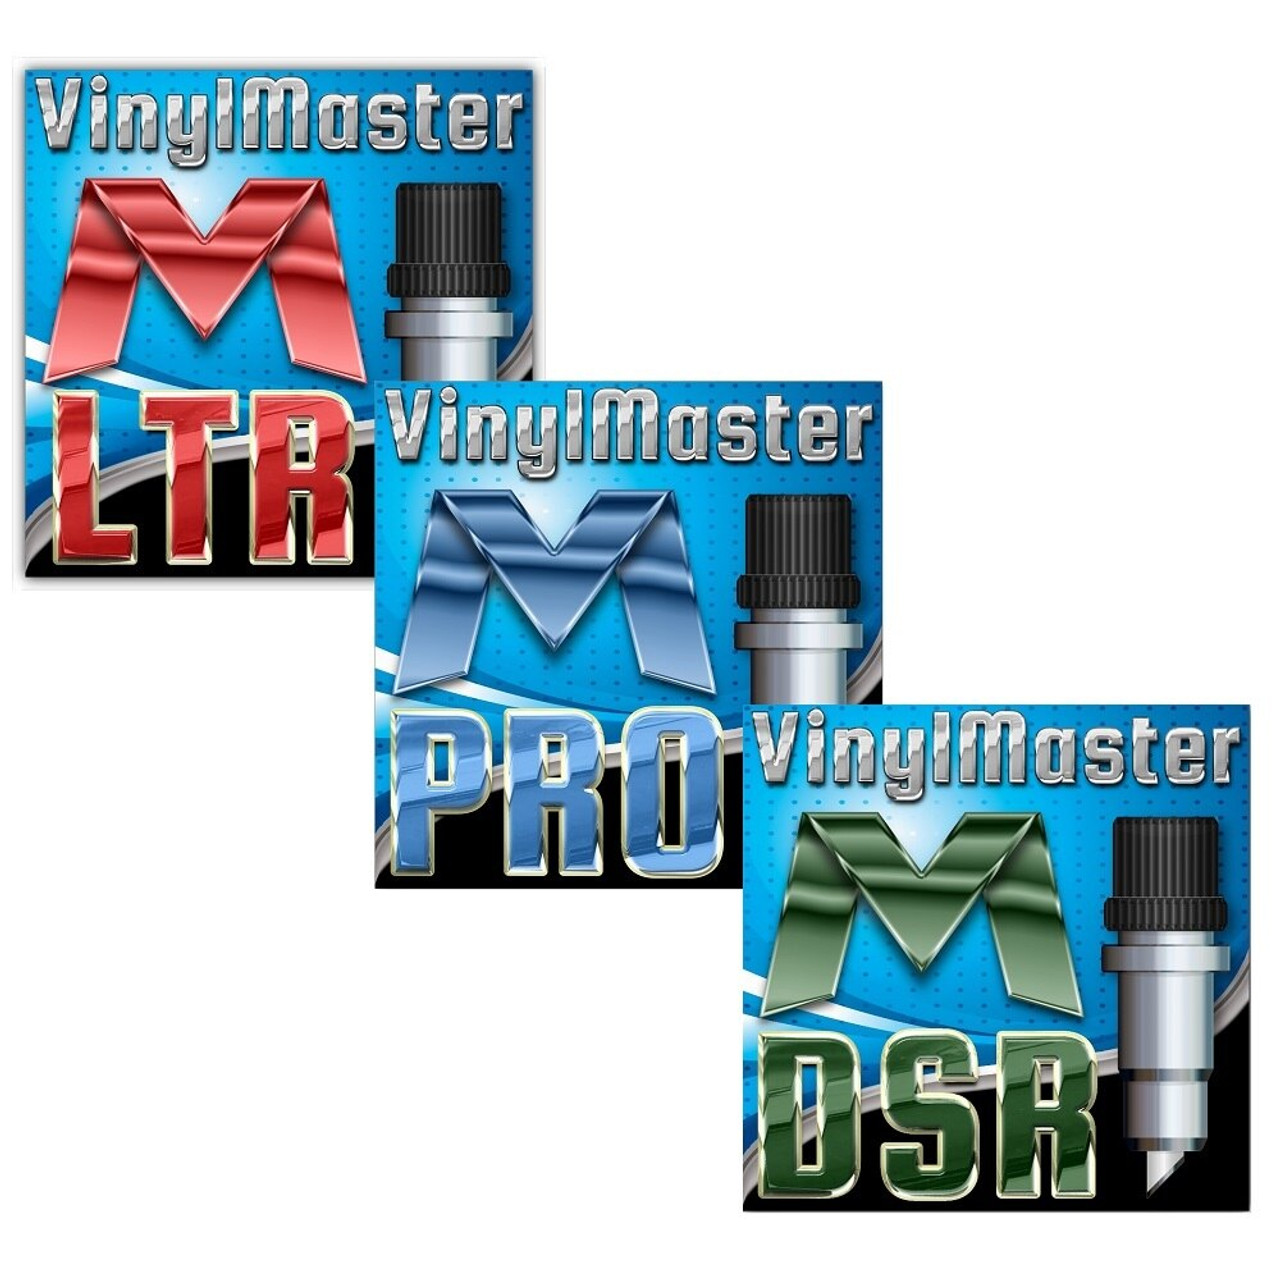 titan vinylmaster pro printer how to